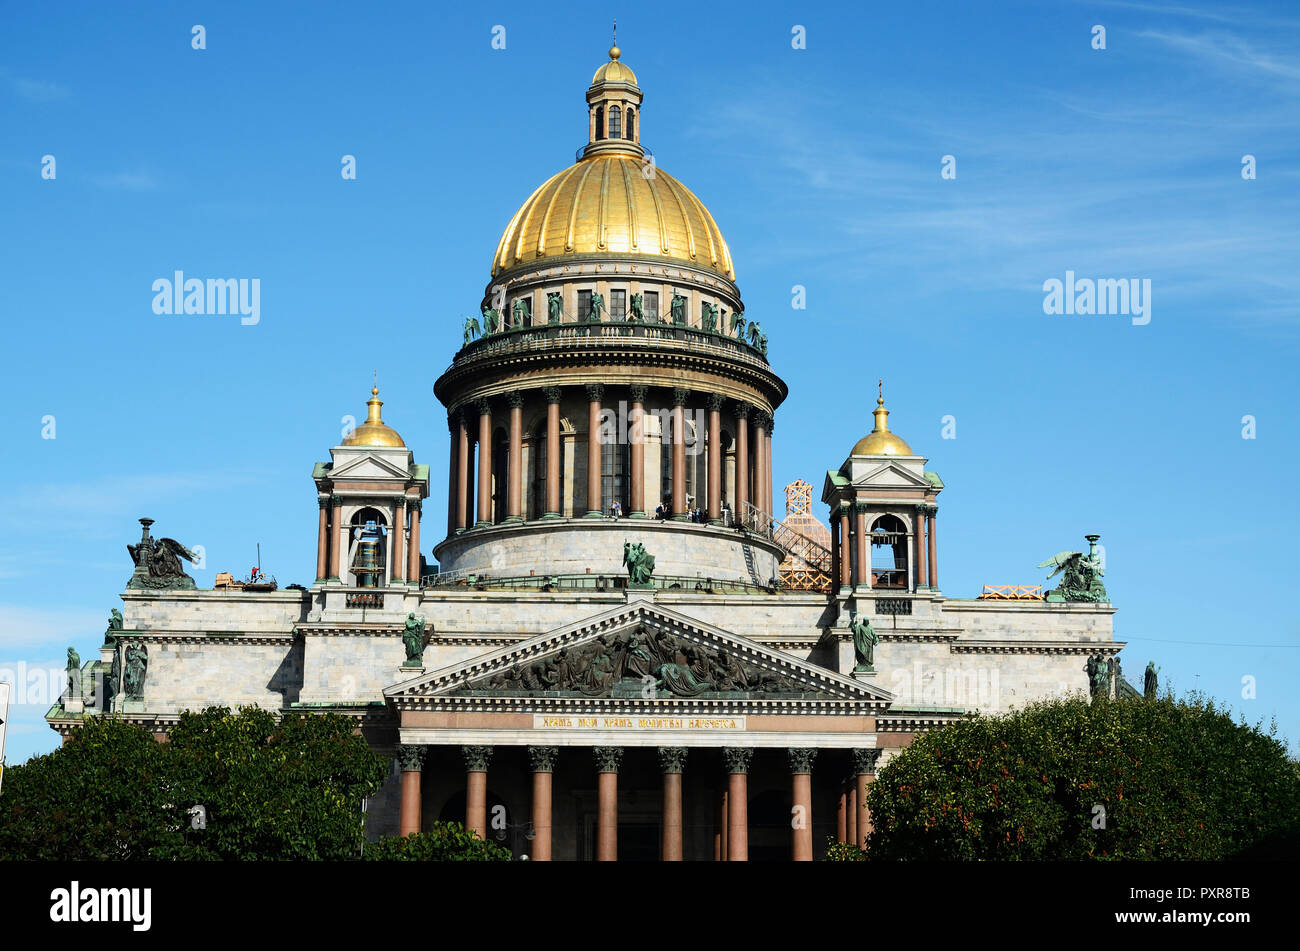 La Cathédrale Saint Isaac ou Isaakievskiy Sobor est la plus grande cathédrale orthodoxe russe et la quatrième plus grande cathédrale du monde. Saint Petersbur Banque D'Images